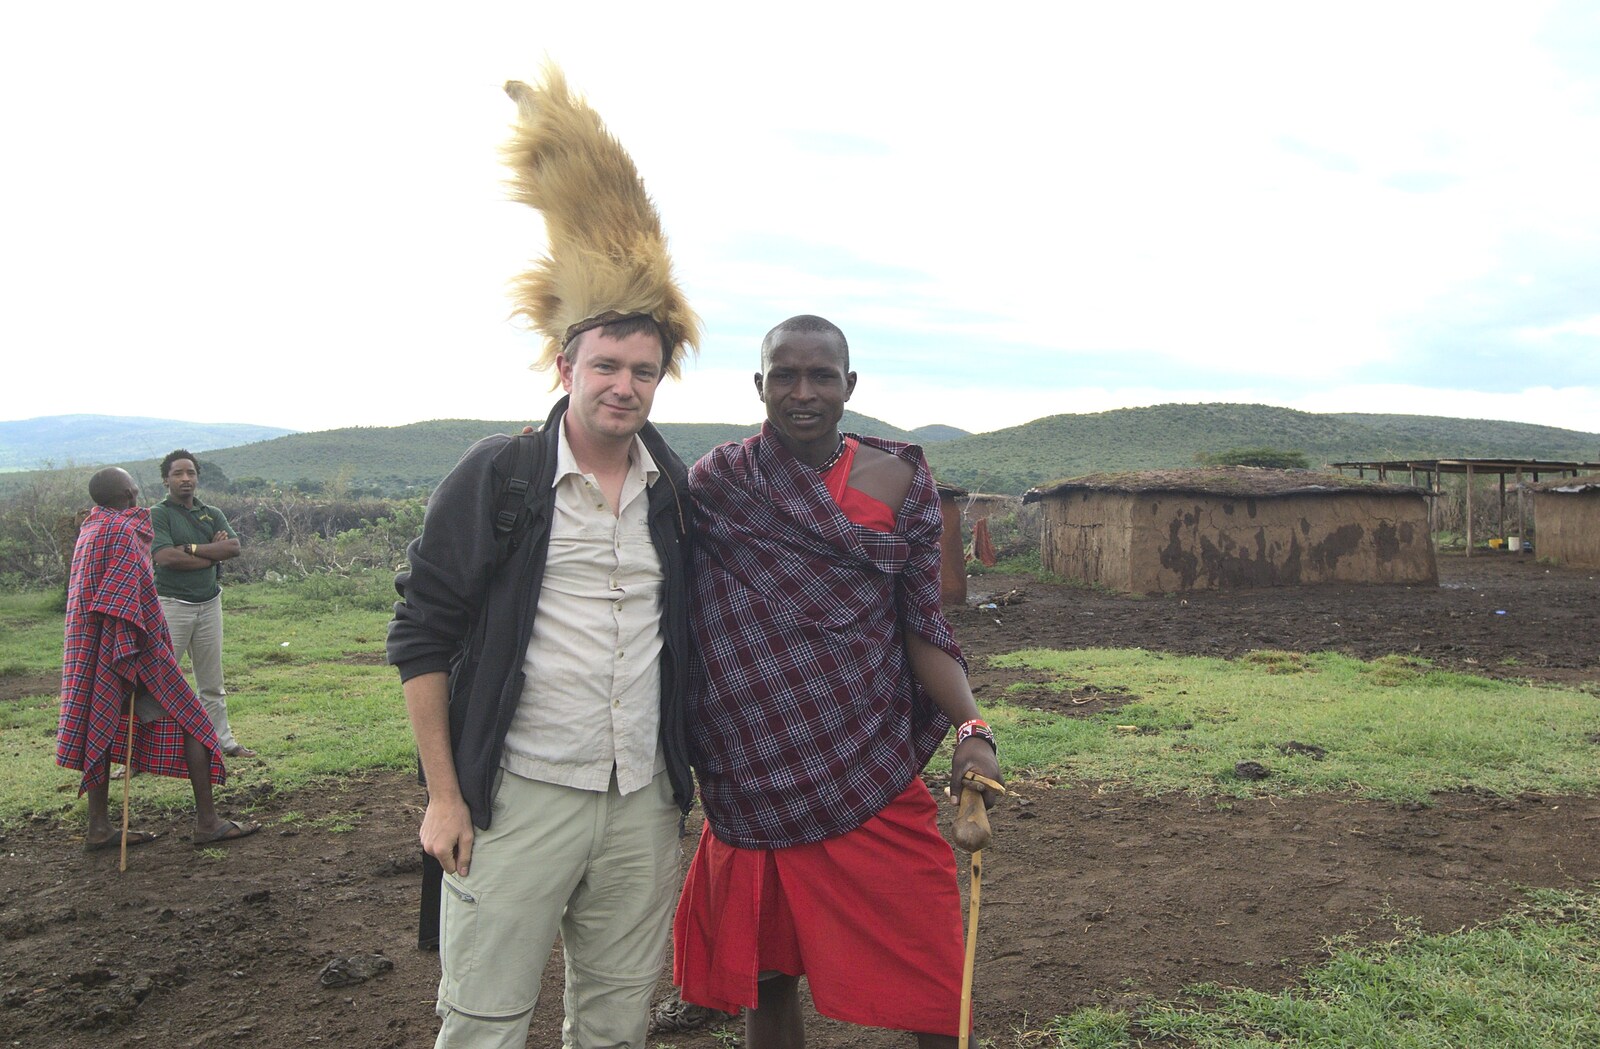 Maasai Mara Safari and a Maasai Village, Ololaimutia, Kenya - 5th November 2010: Nosher and the chief's son